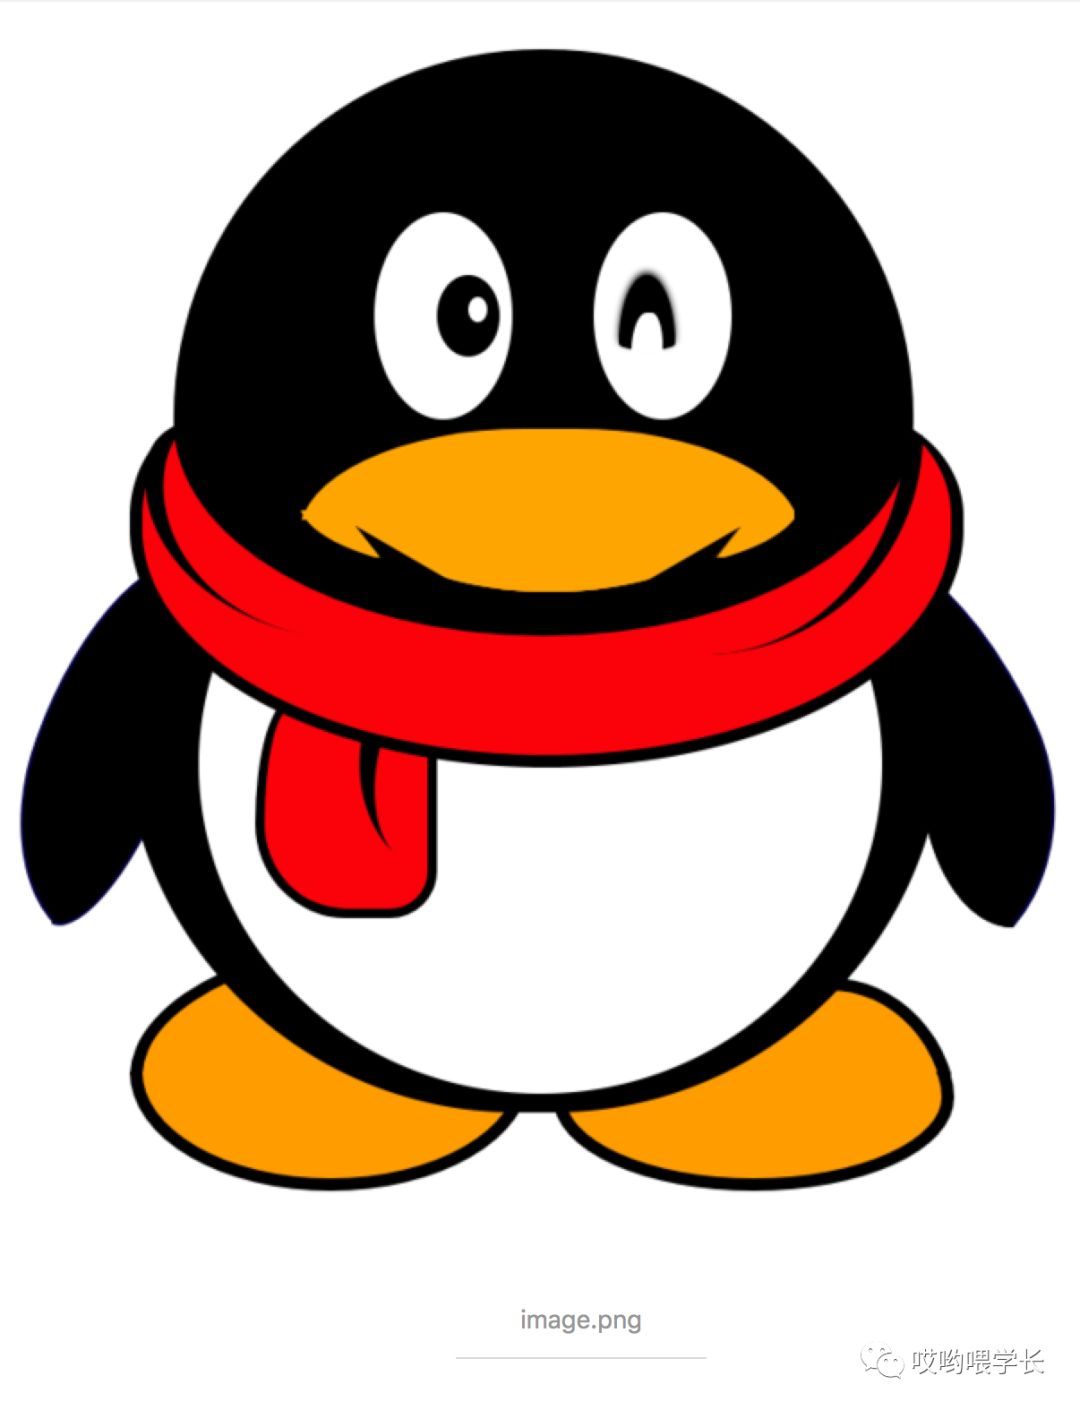 企鹅logo图片大全图片